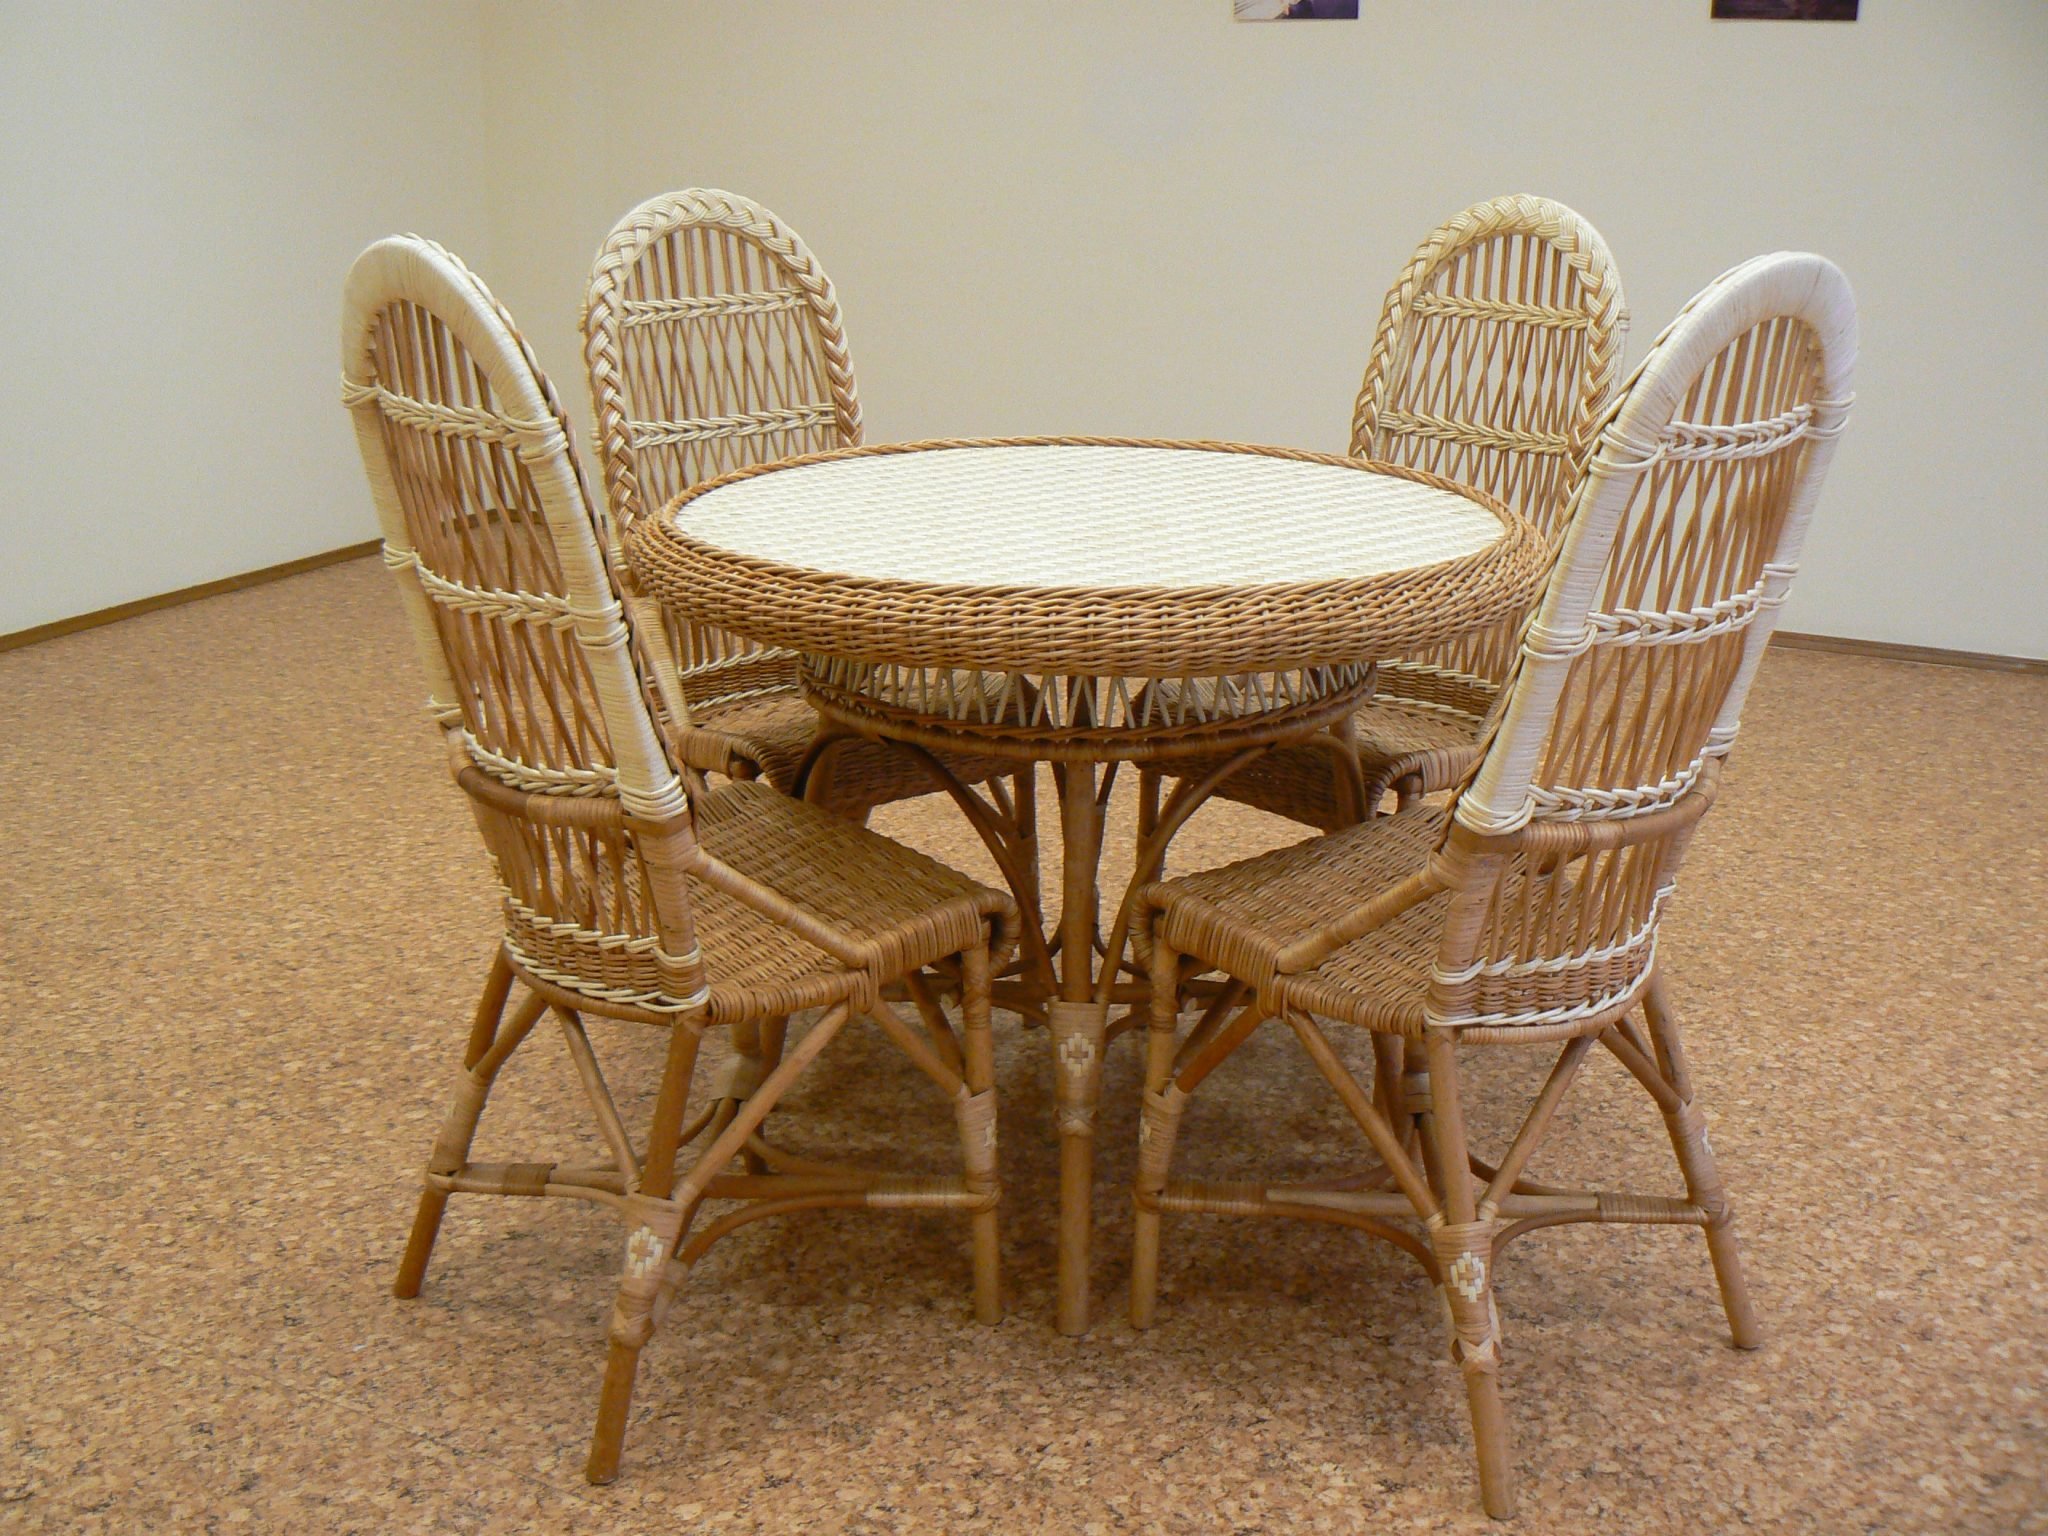 Столик лоза. Плетеные столы и стулья. Мебель из лозы. Плетенные столи истуля. Столик стул плетеный.